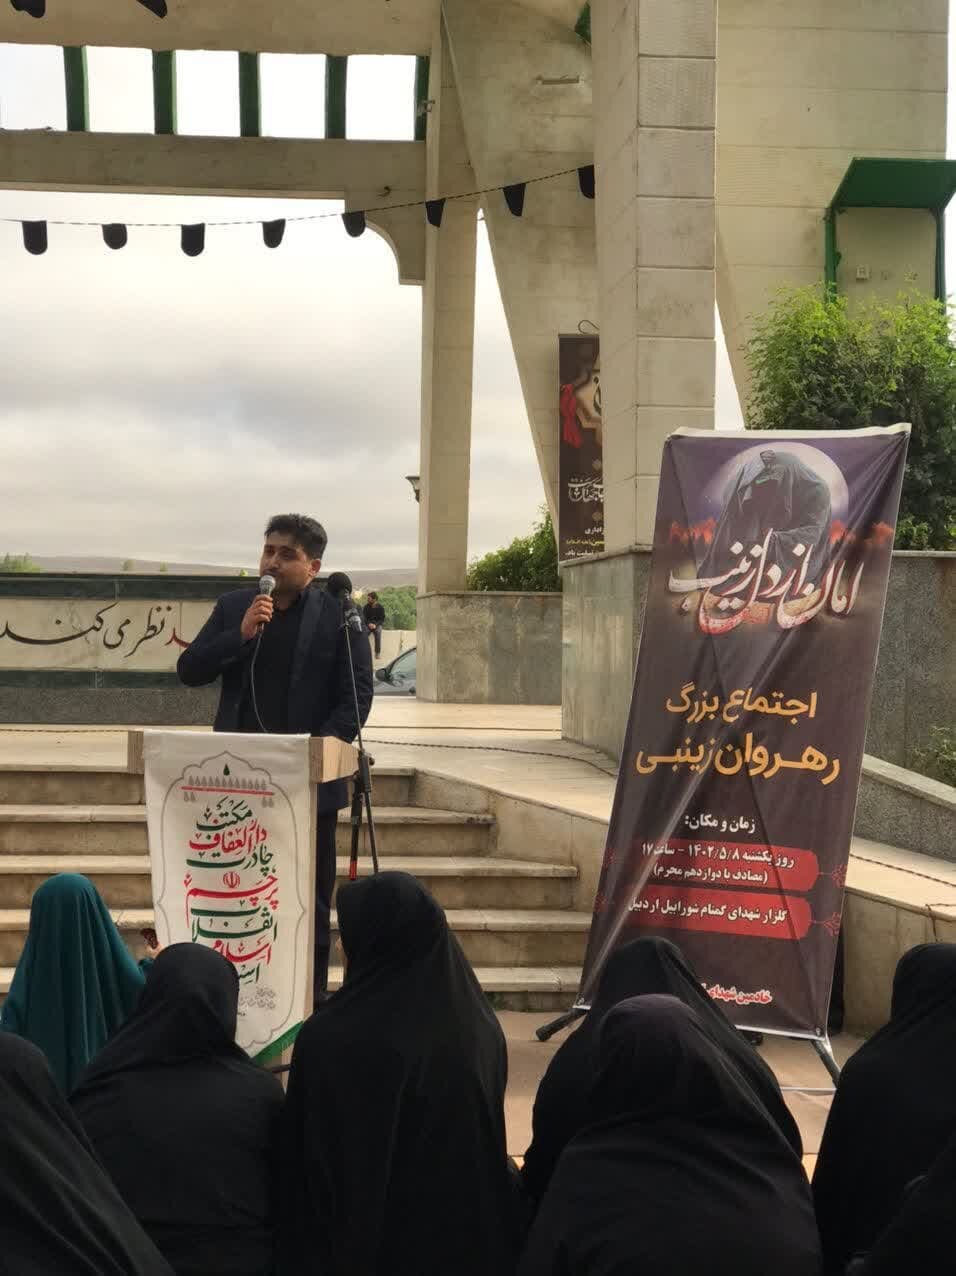 اجتماع بزرگ «رهروان زینبی» در شورابیل اردبیل برگزار شد